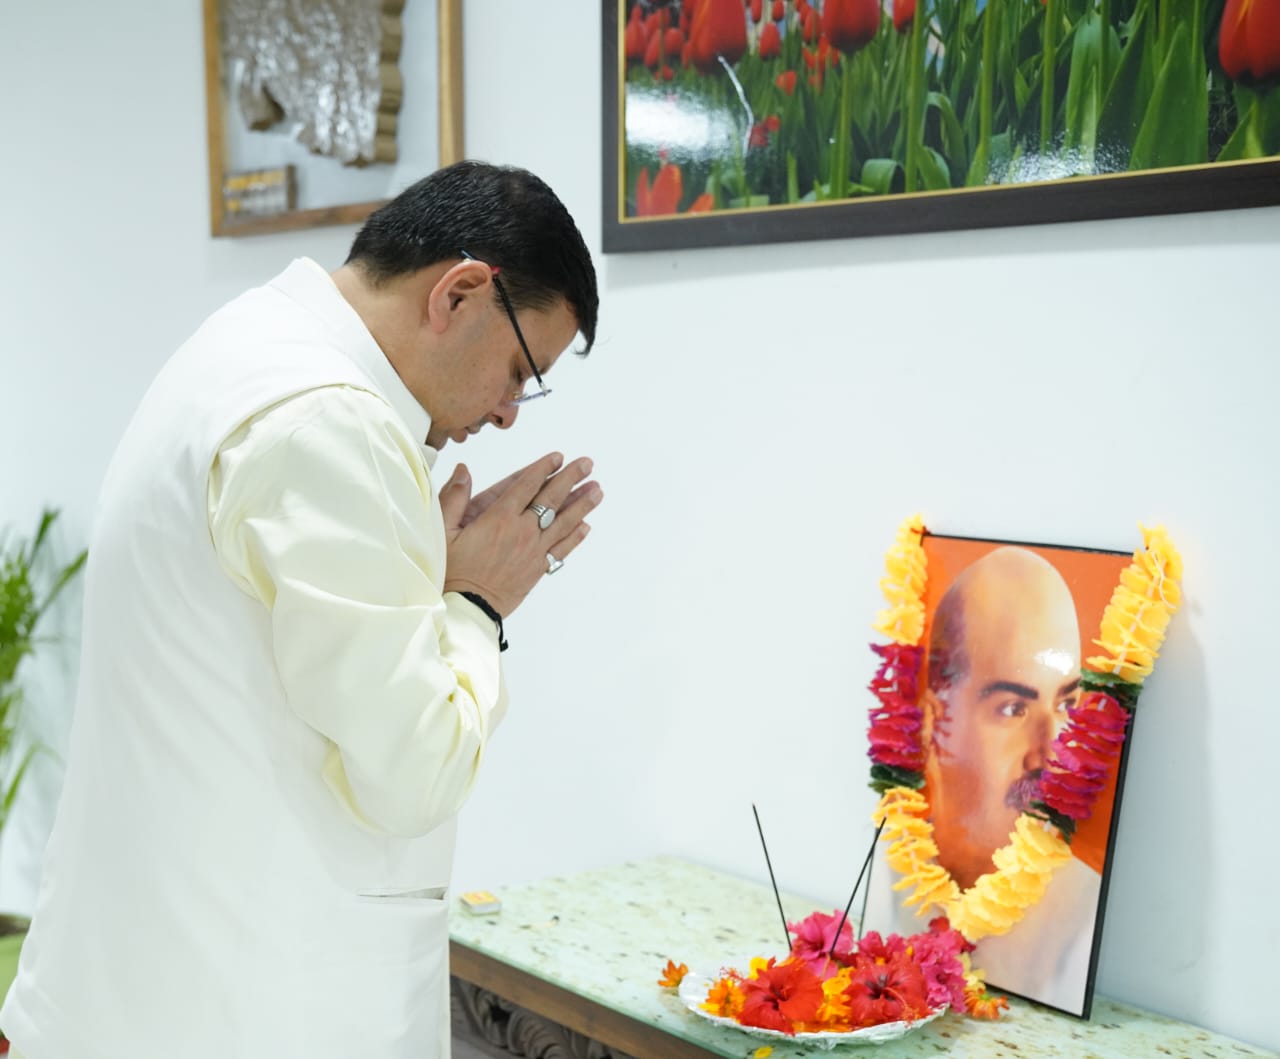 CM पुष्कर सिंह धामी ने डॉ. श्यामा प्रसाद मुखर्जी की जयंती पर अर्पित की श्रद्धांजलि….